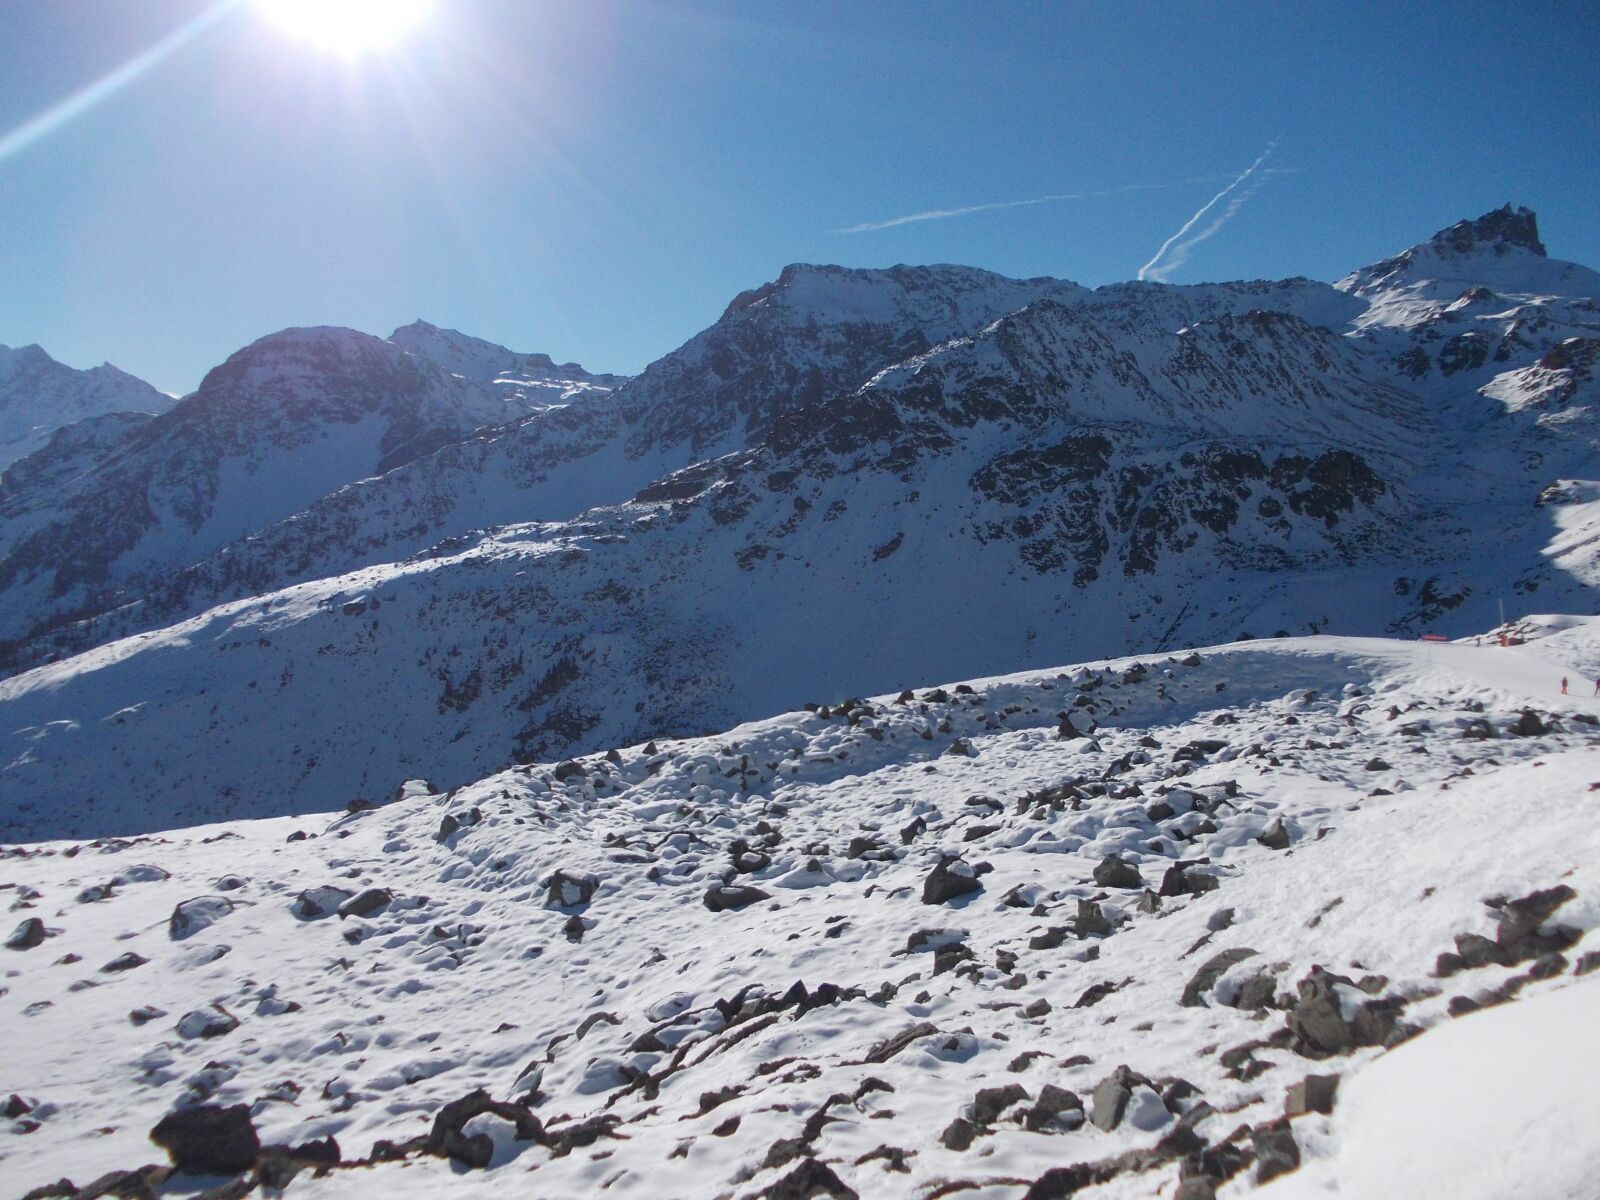 Nikon COOLPIX L25 sample photo. Montagne, suisse, snow photography